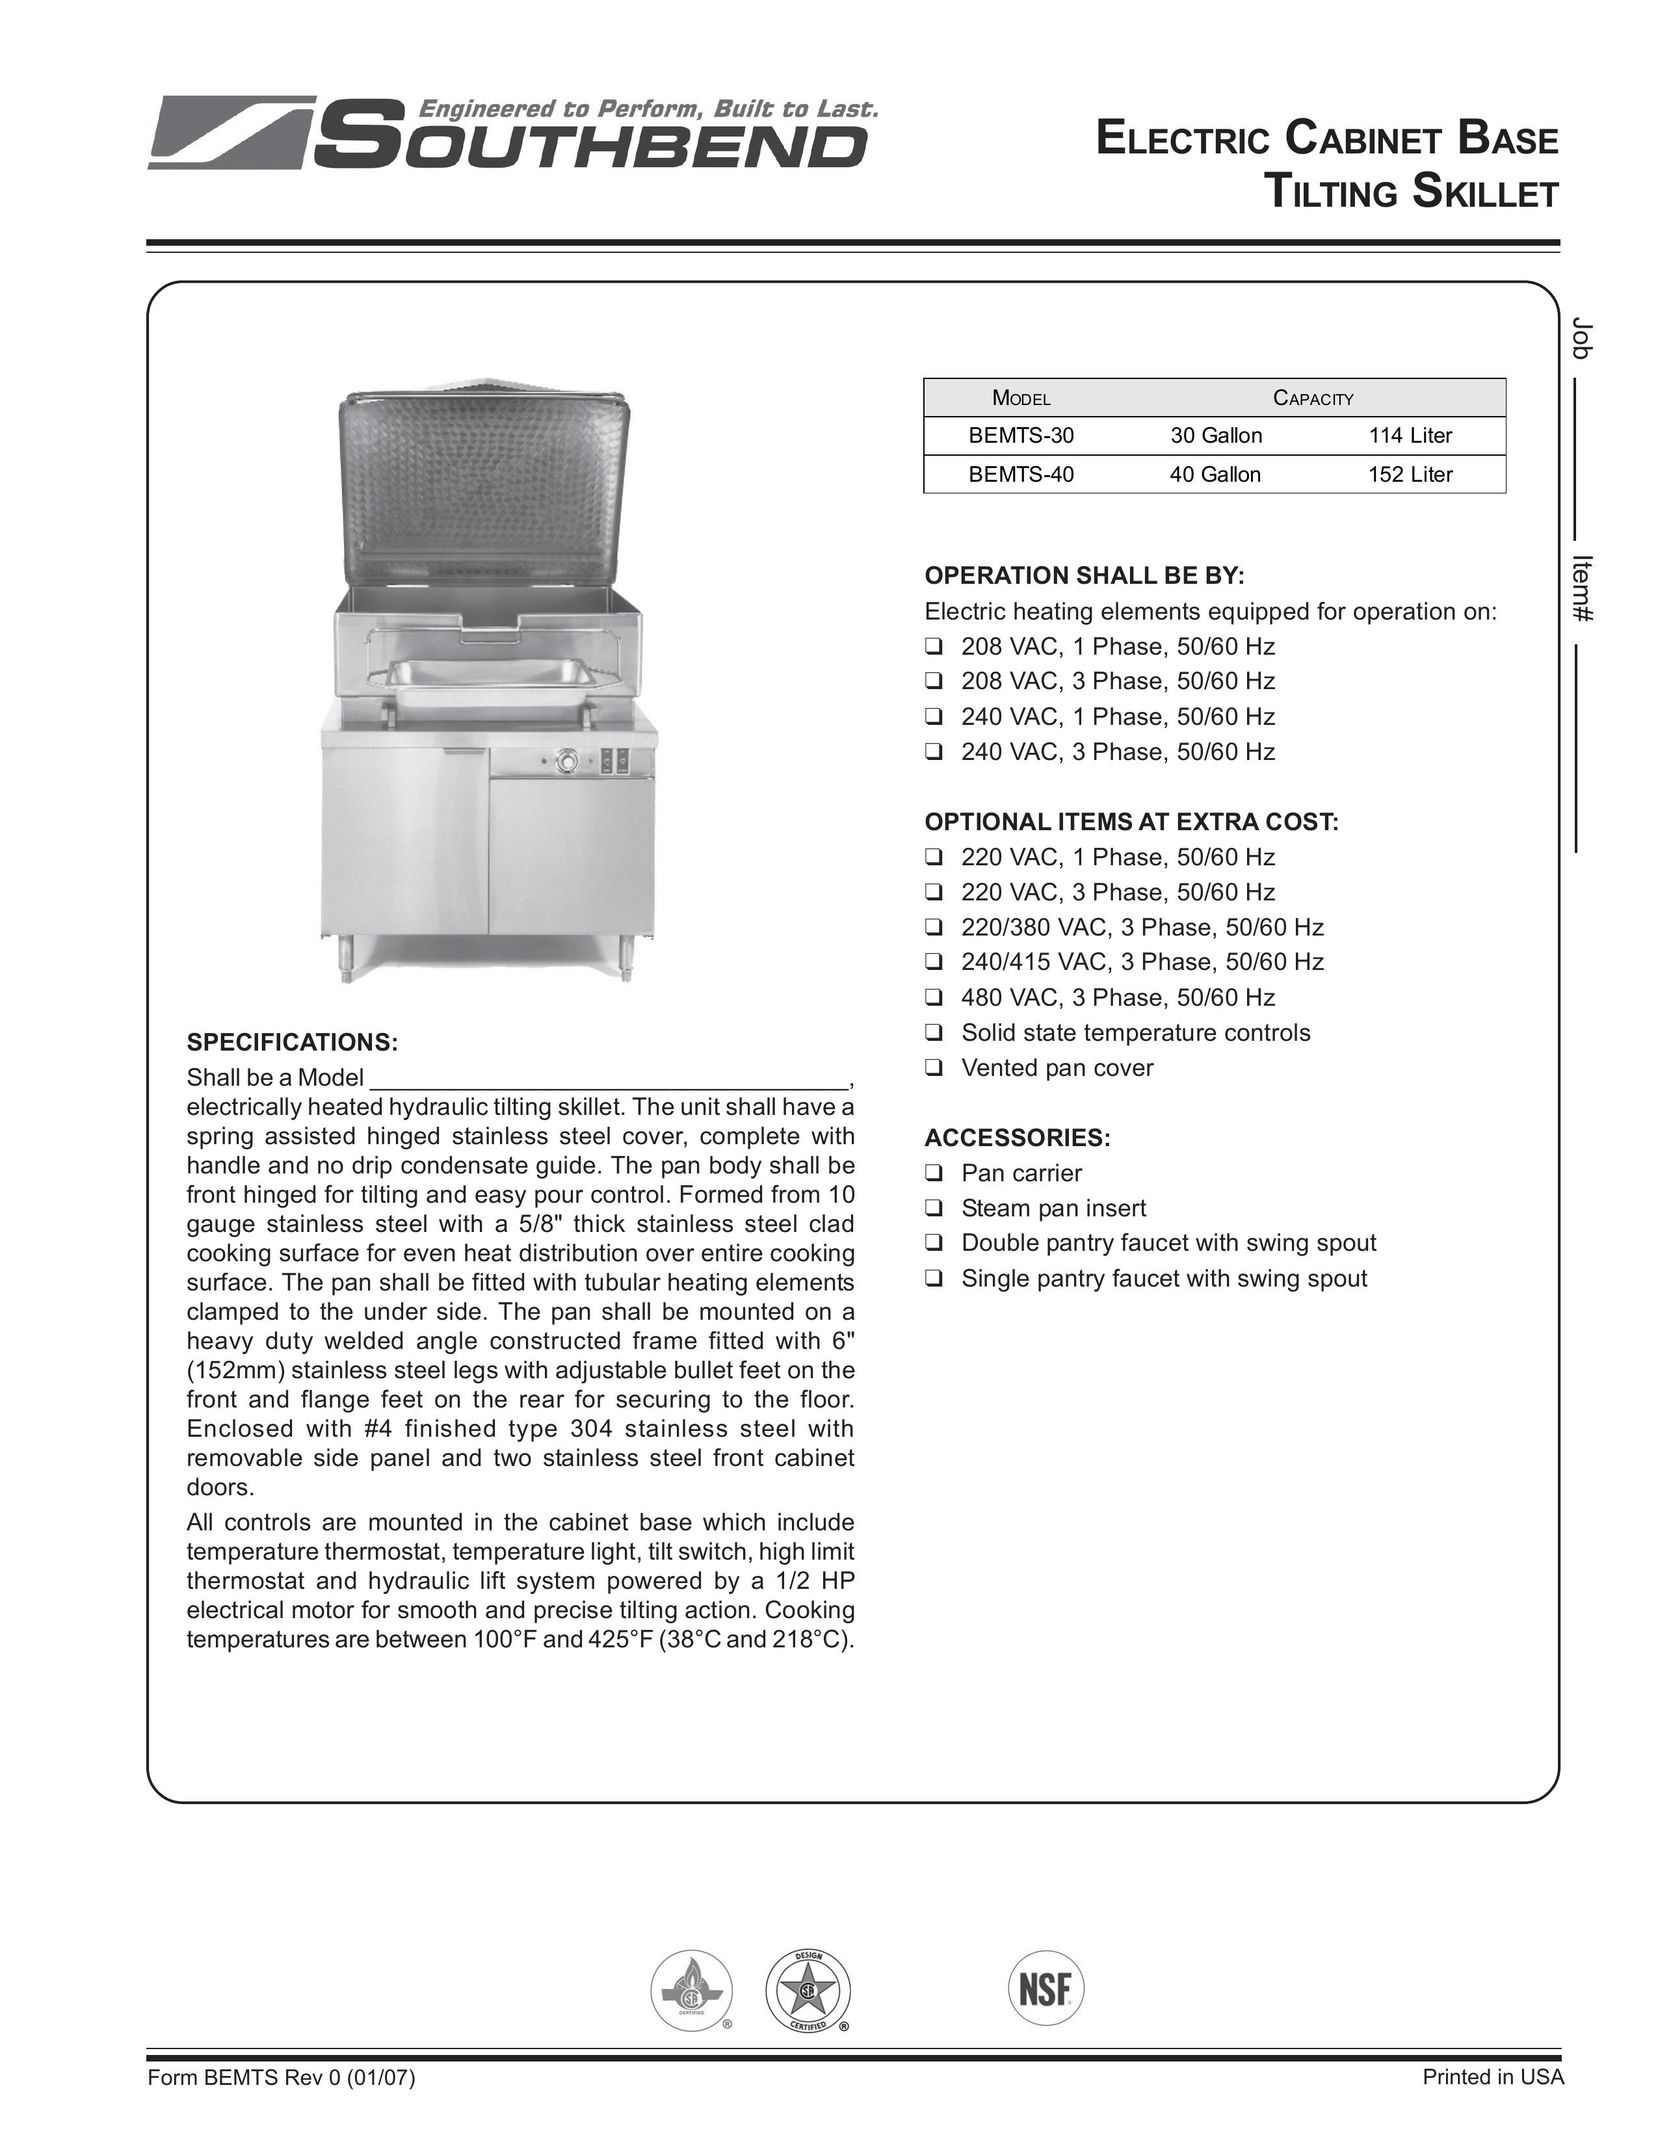 Southbend BEMTS-40 Fryer User Manual